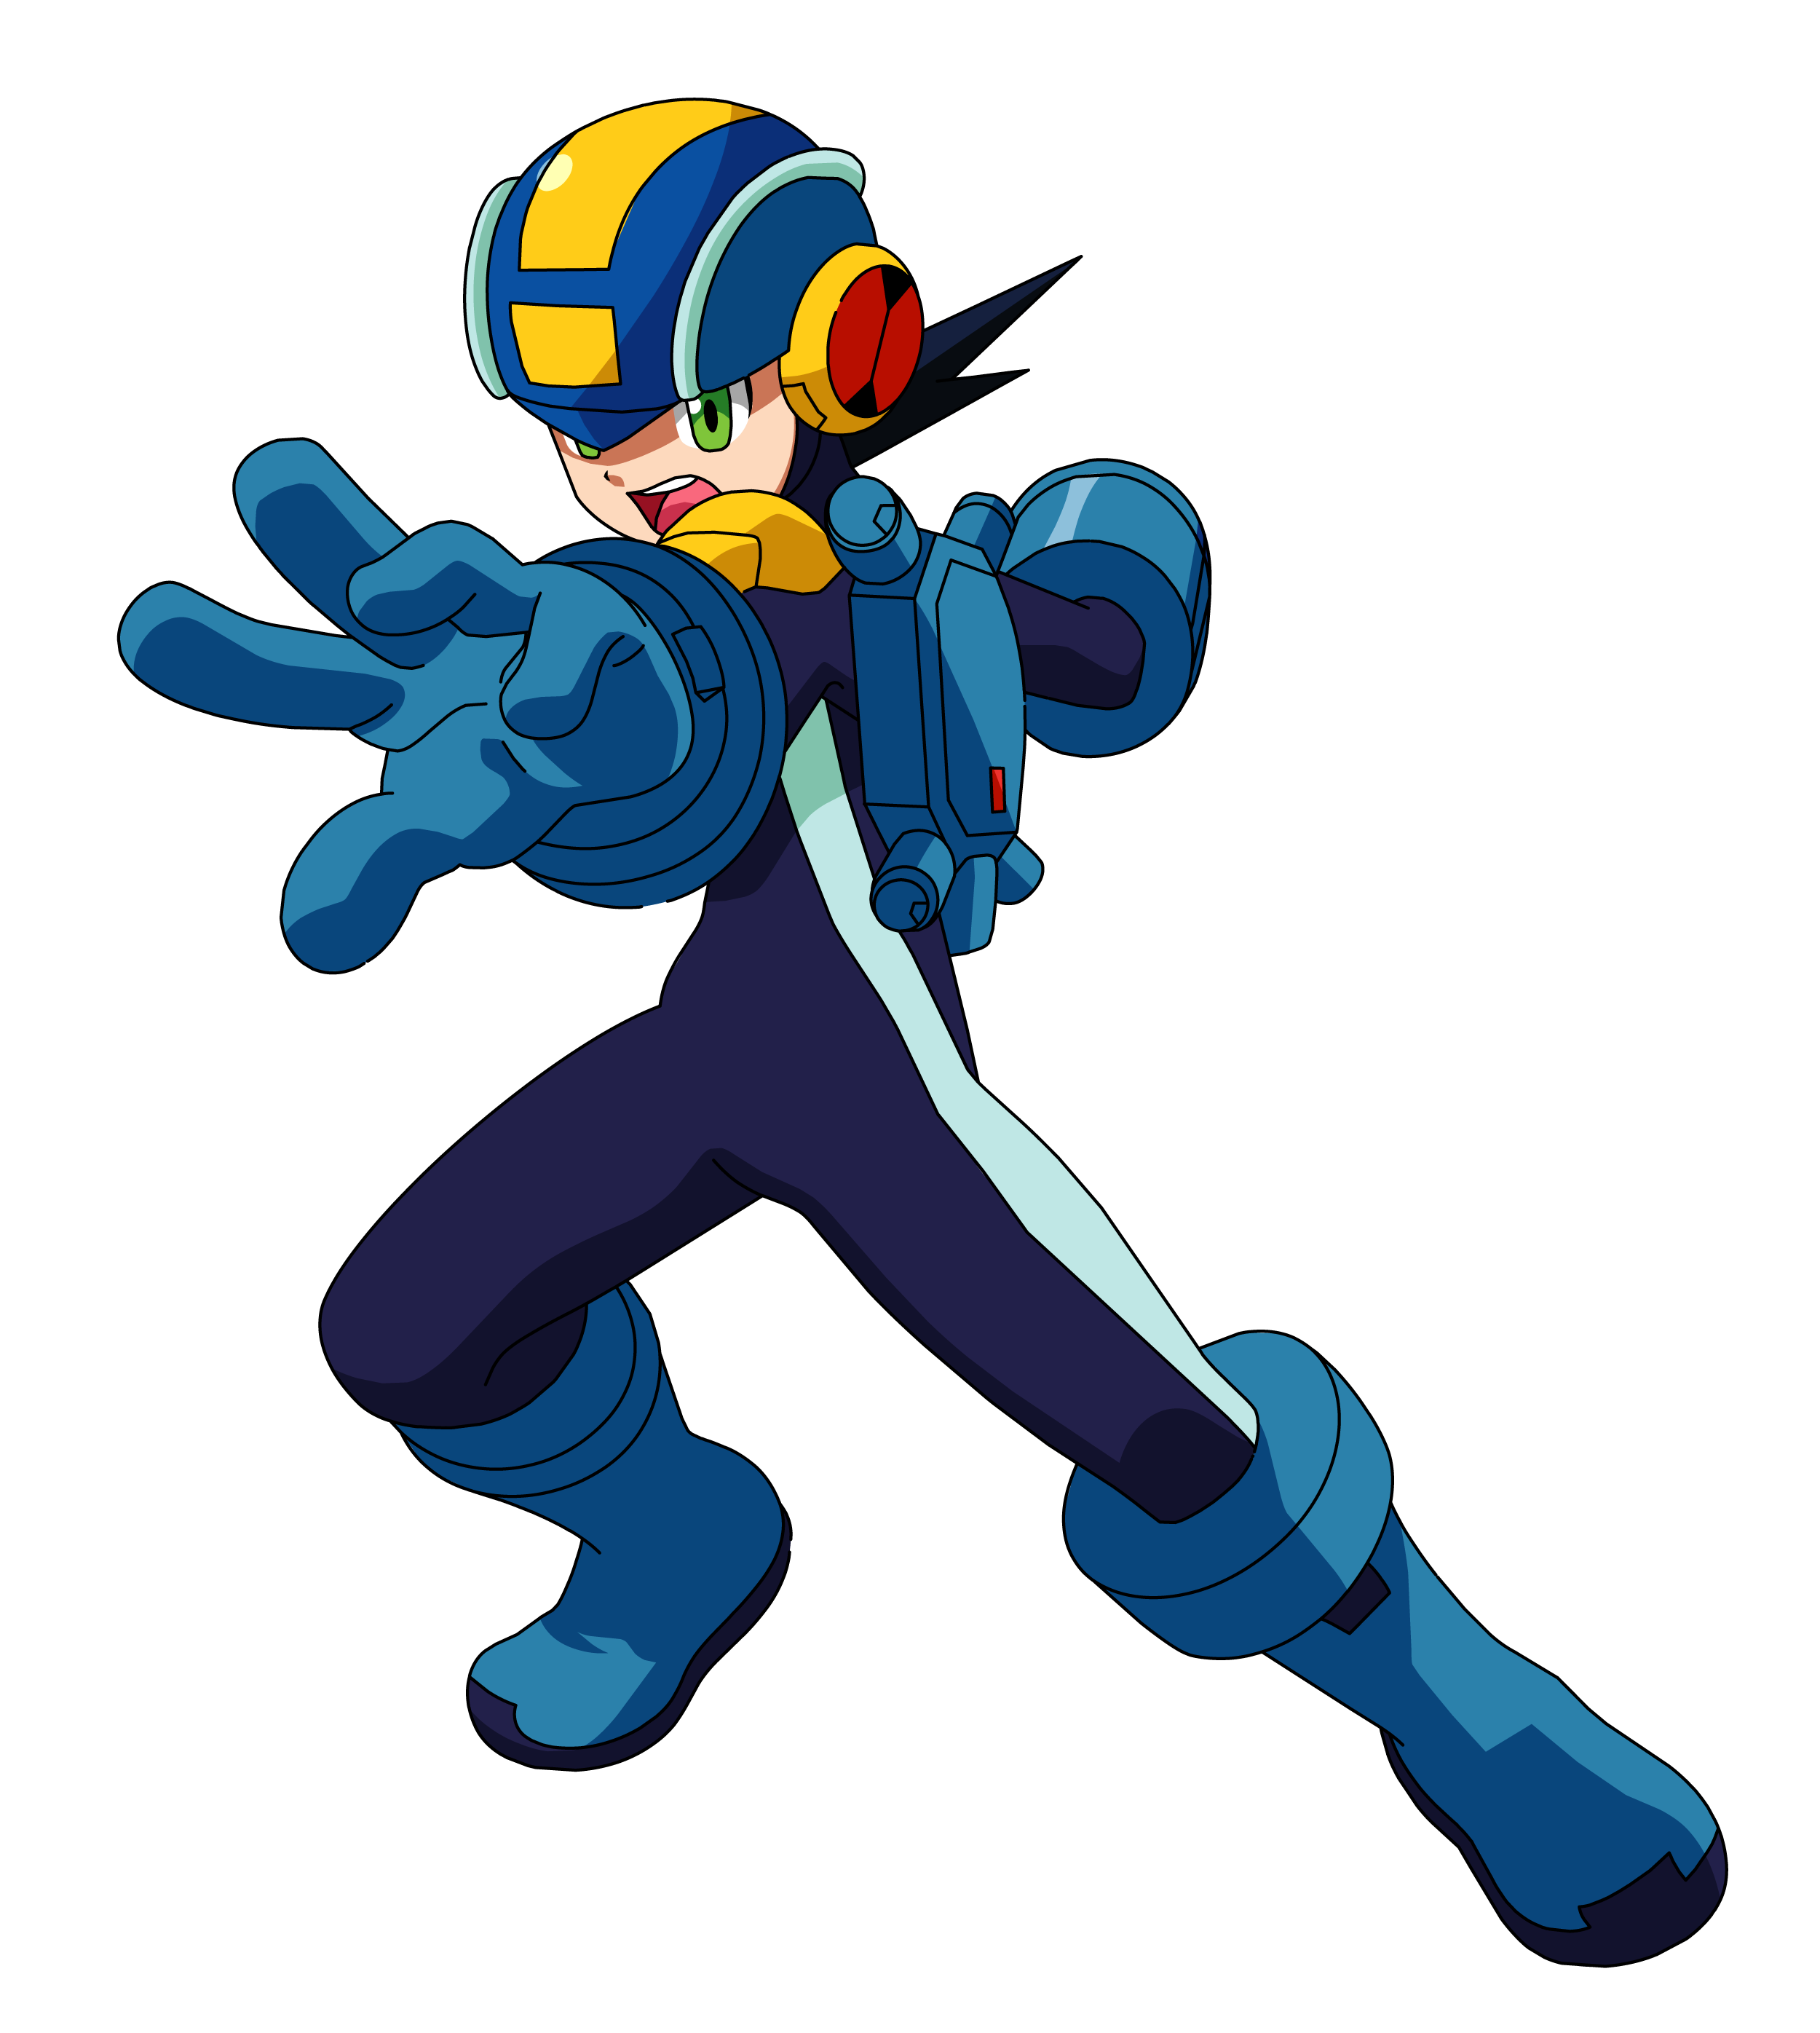 Mega Man Mega Man Battle Network Model Kit – Anime Store, 56% OFF